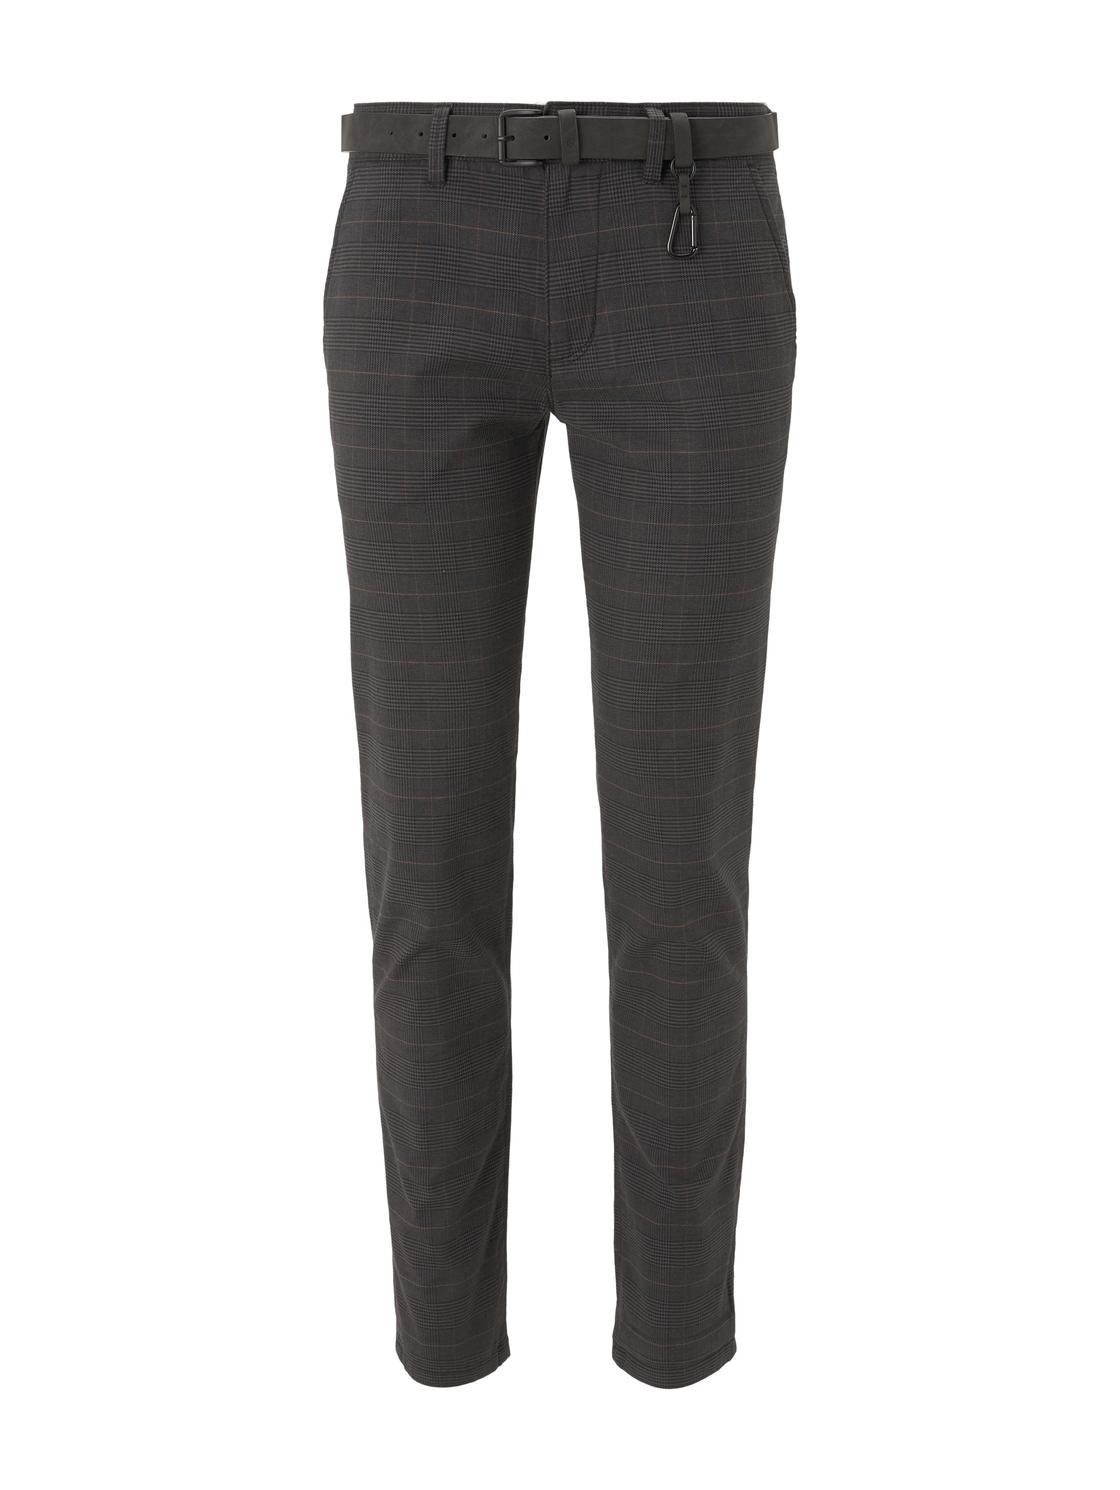 Тканевые брюки TOM TAILOR Denim Stoff/Chino Chino mit Gürtel regular/straight, серый худи tom tailor размер m серый